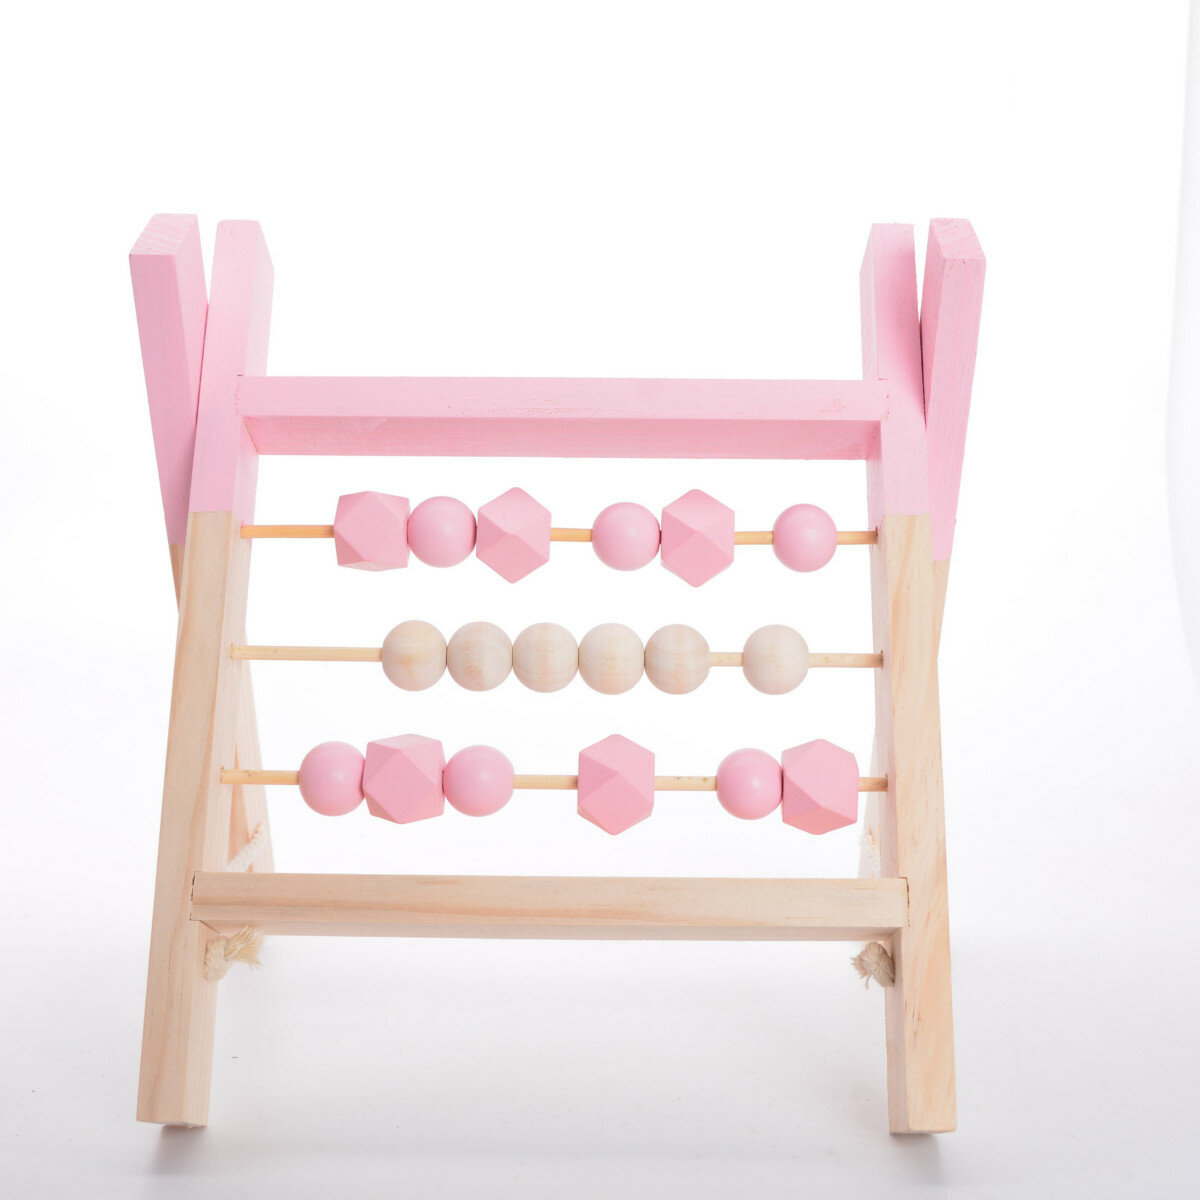 Natuurlijke grenen Nordic Baby Room Decor houten Abacus educatieve kwekerij rekwisieten speelgoed